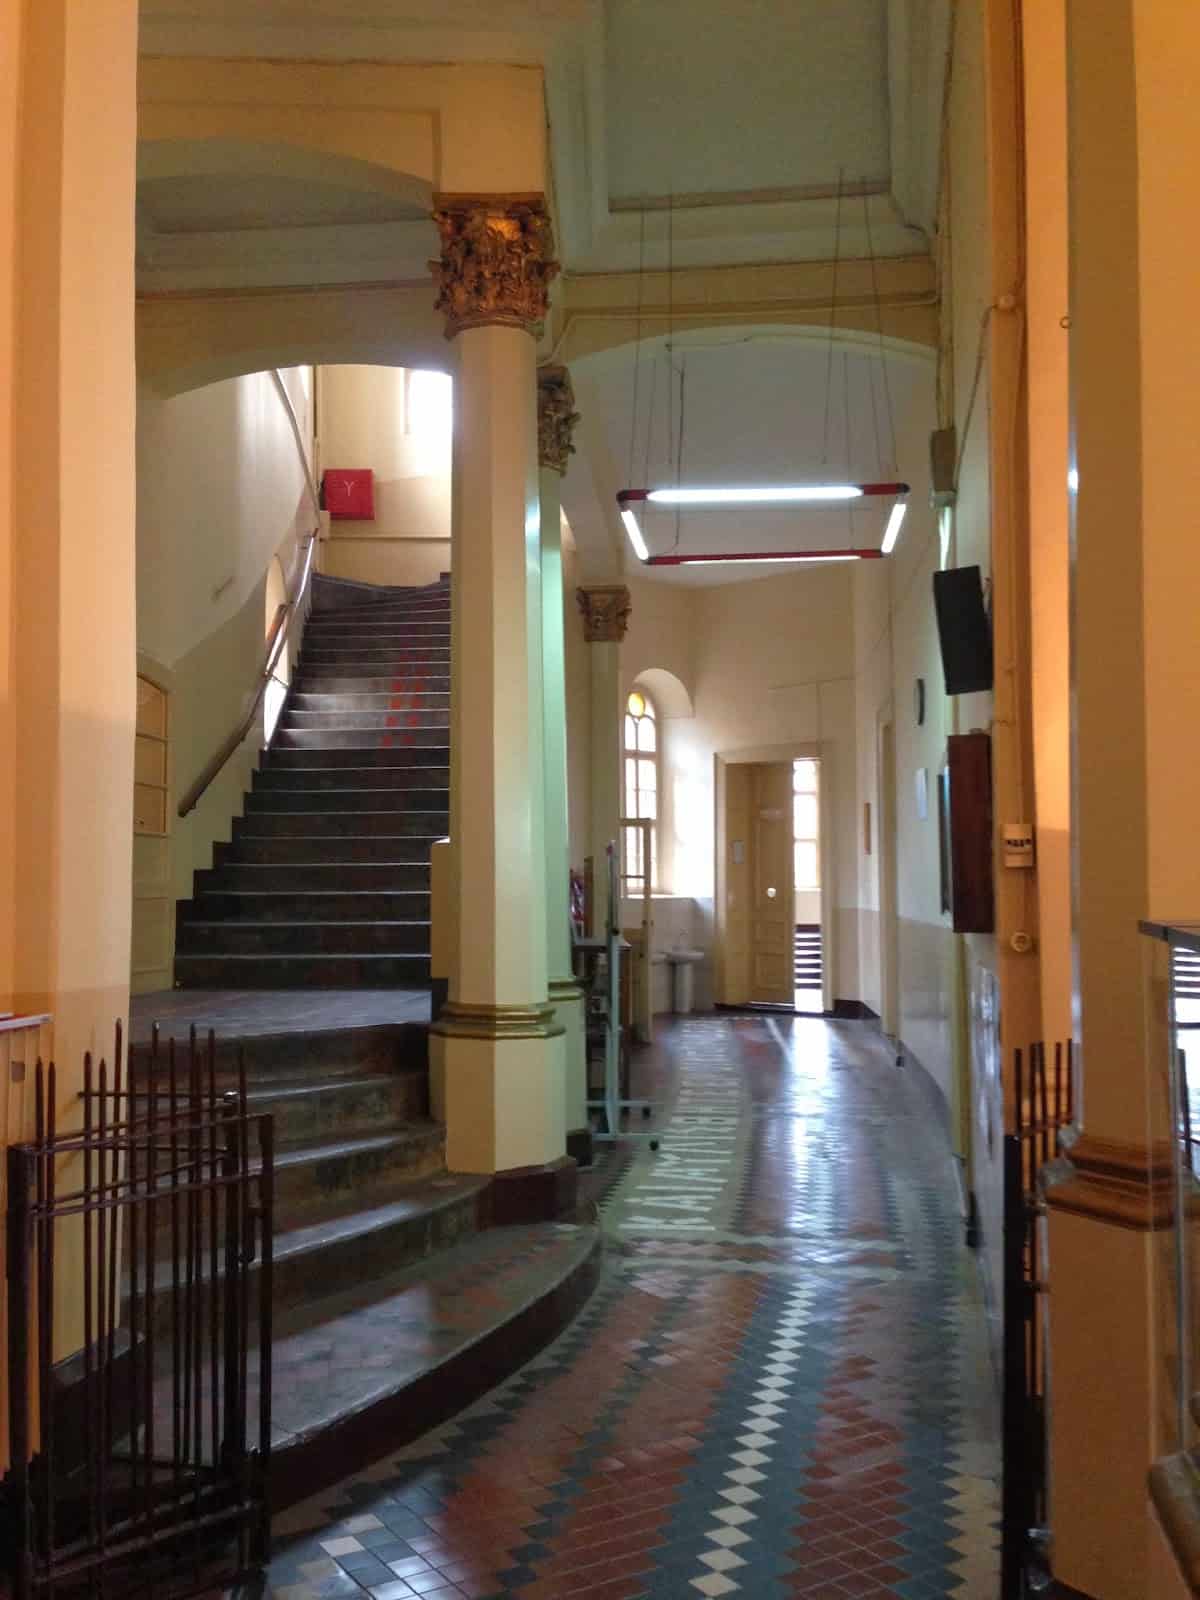 Hallway at Phanar Greek Orthodox College in Fener, Istanbul, Turkey